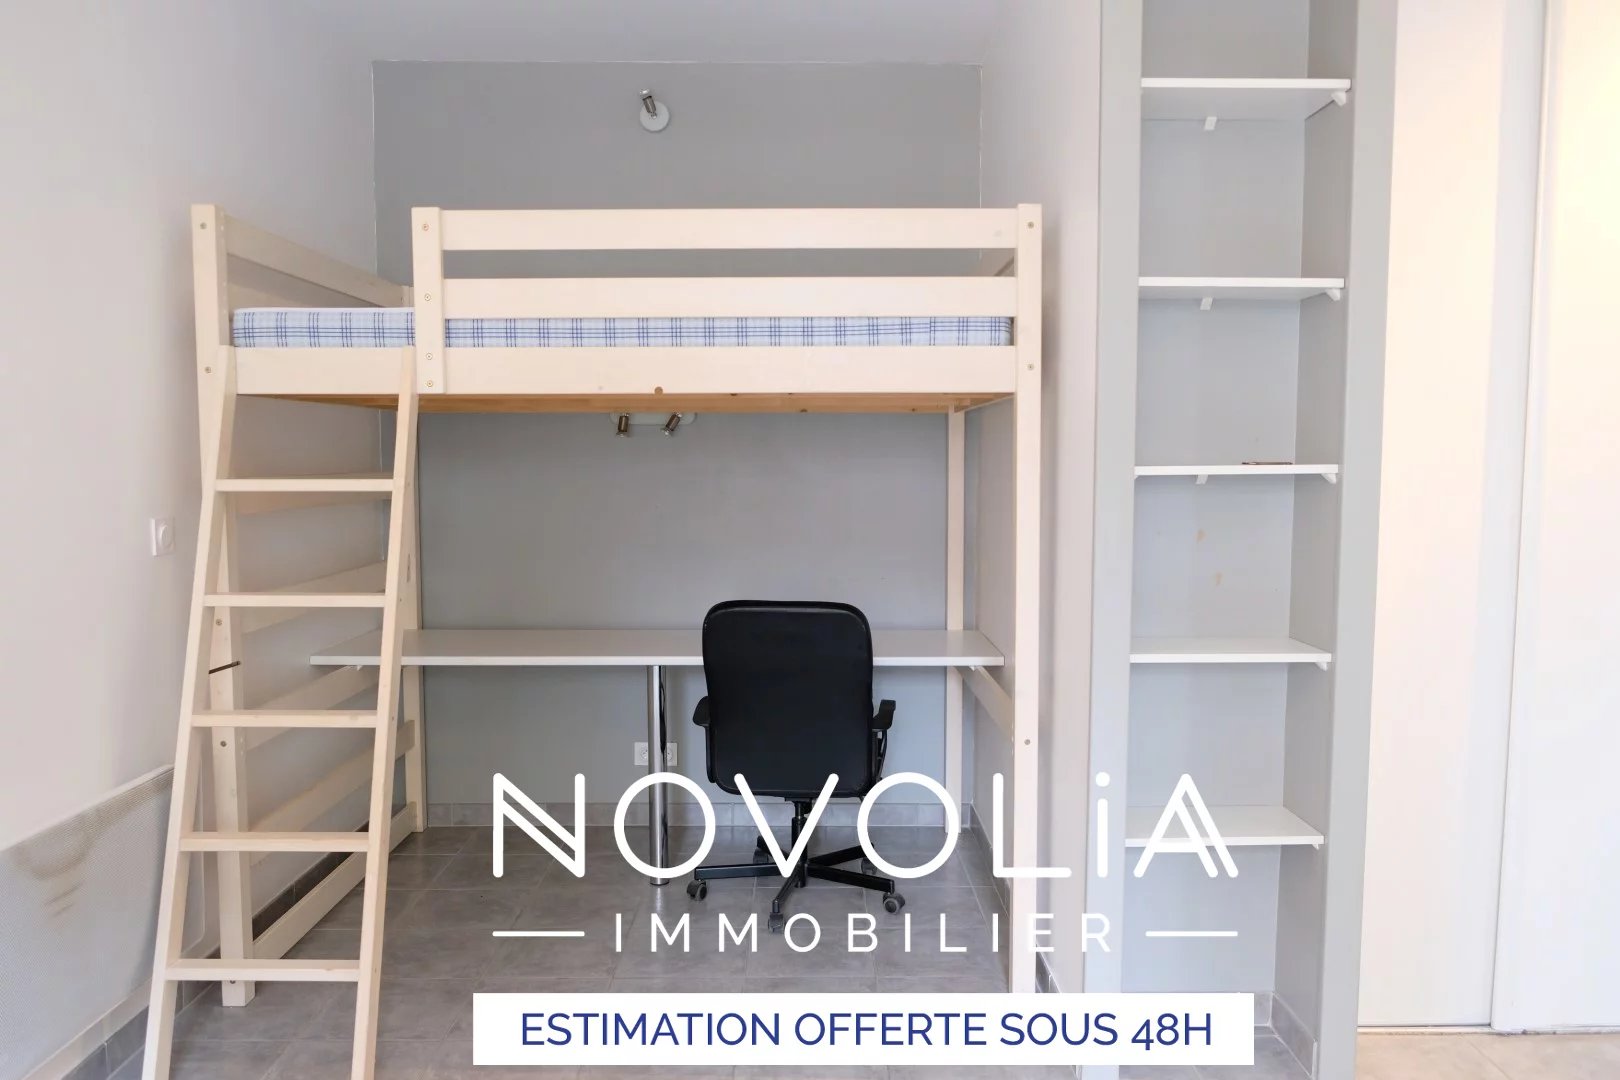 Achat Appartement, Surface de 27.87 m²/ Total carrez : 27 m², 1 pièce, Lyon 8ème (69008)